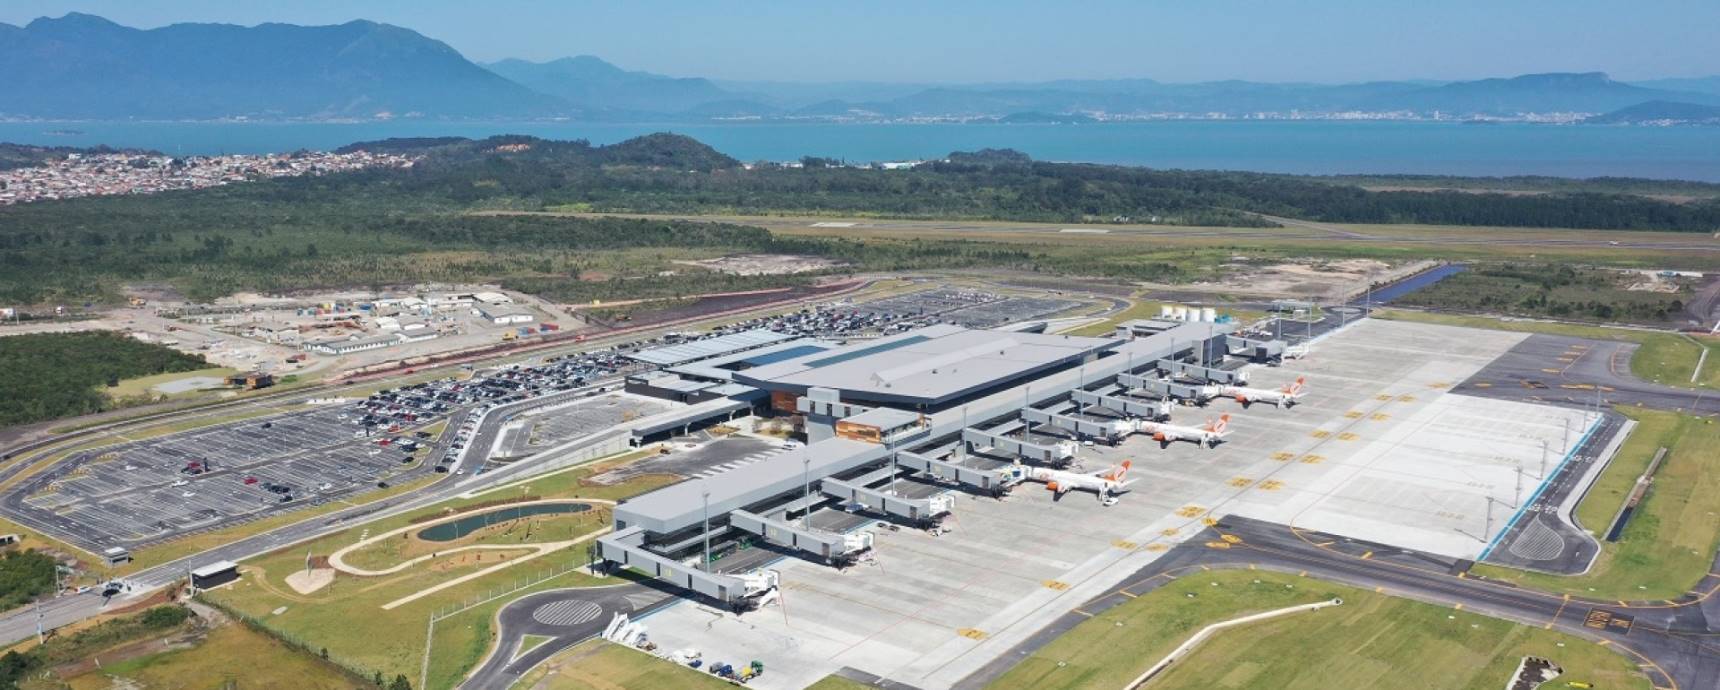 Bilanz: Neuer Flughafen in Florianópolis verzeichnet im ersten Betriebsmonat einen Qualitätssprung bei den Passagierzahlen